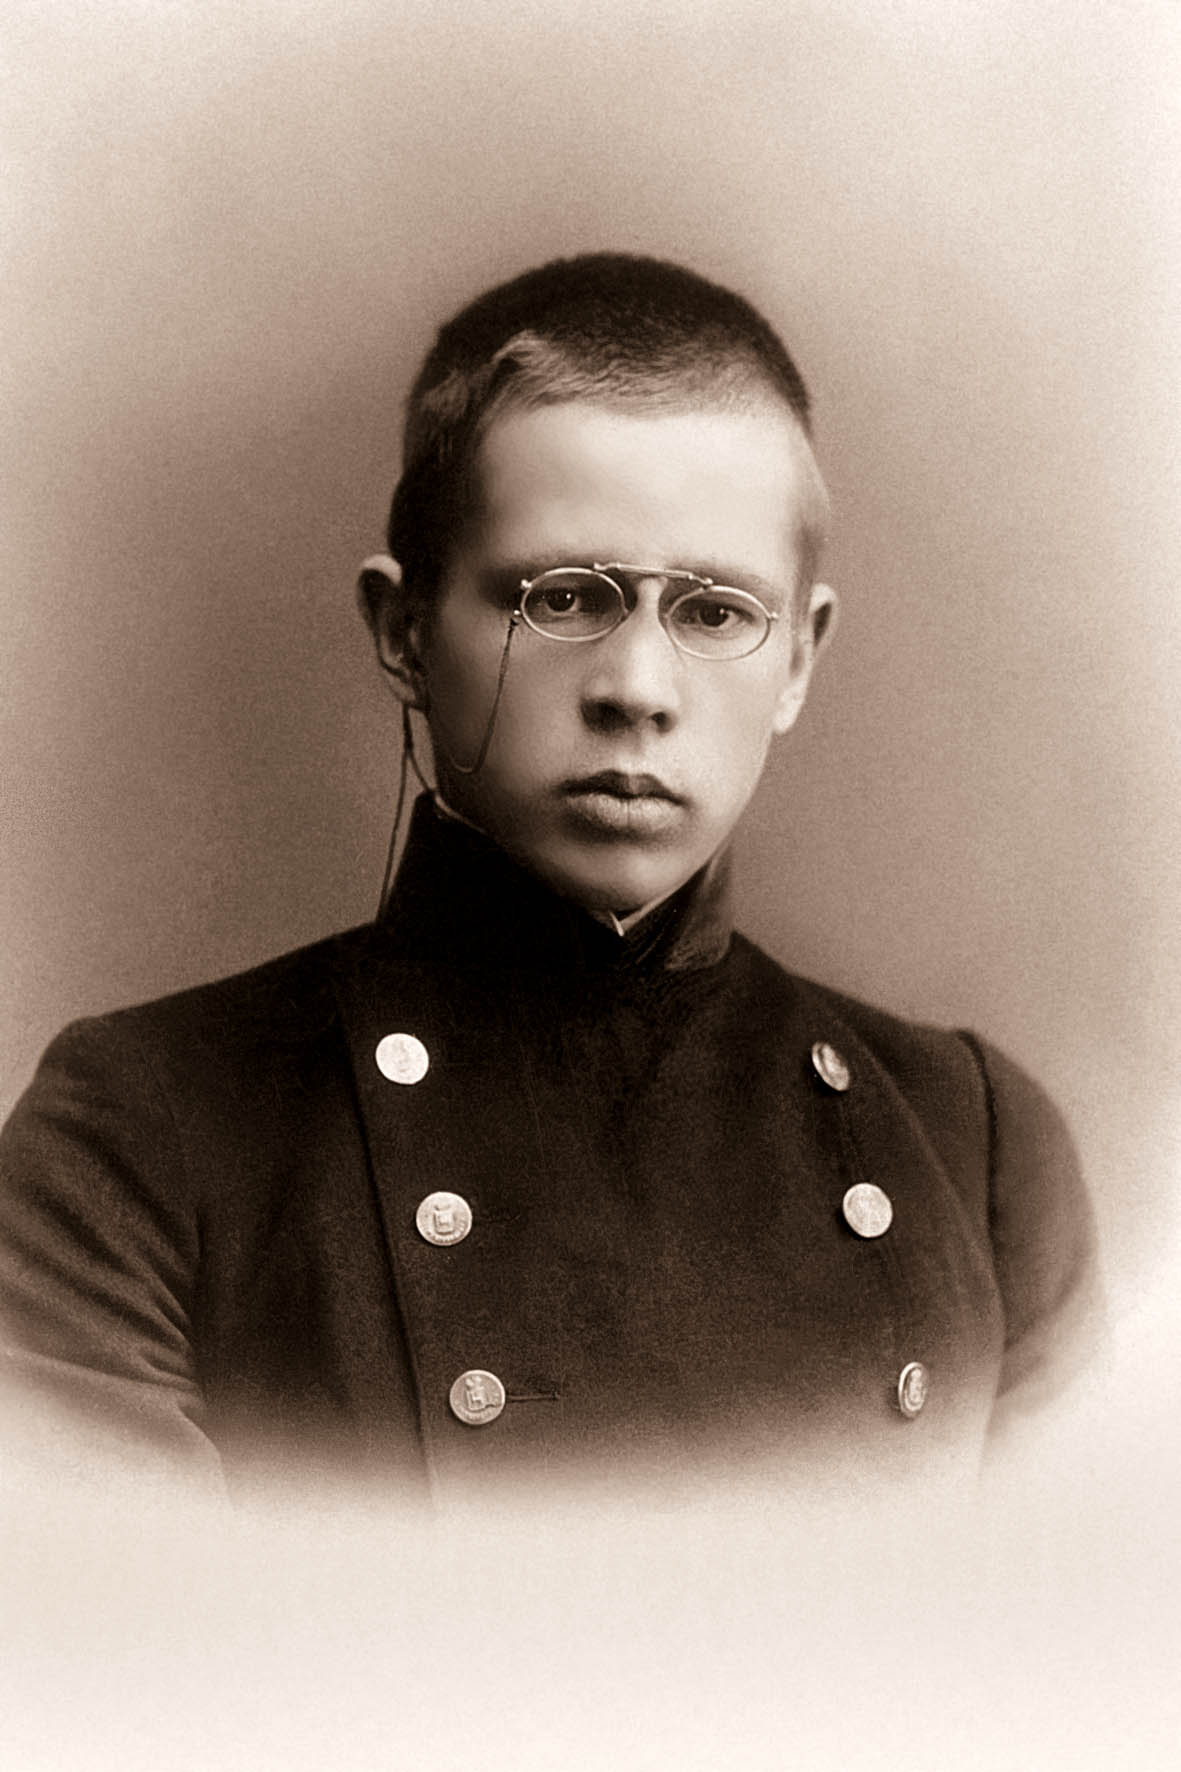 Андрей Викторович Кикин, Нижний Новгород, 27.02.1918г.